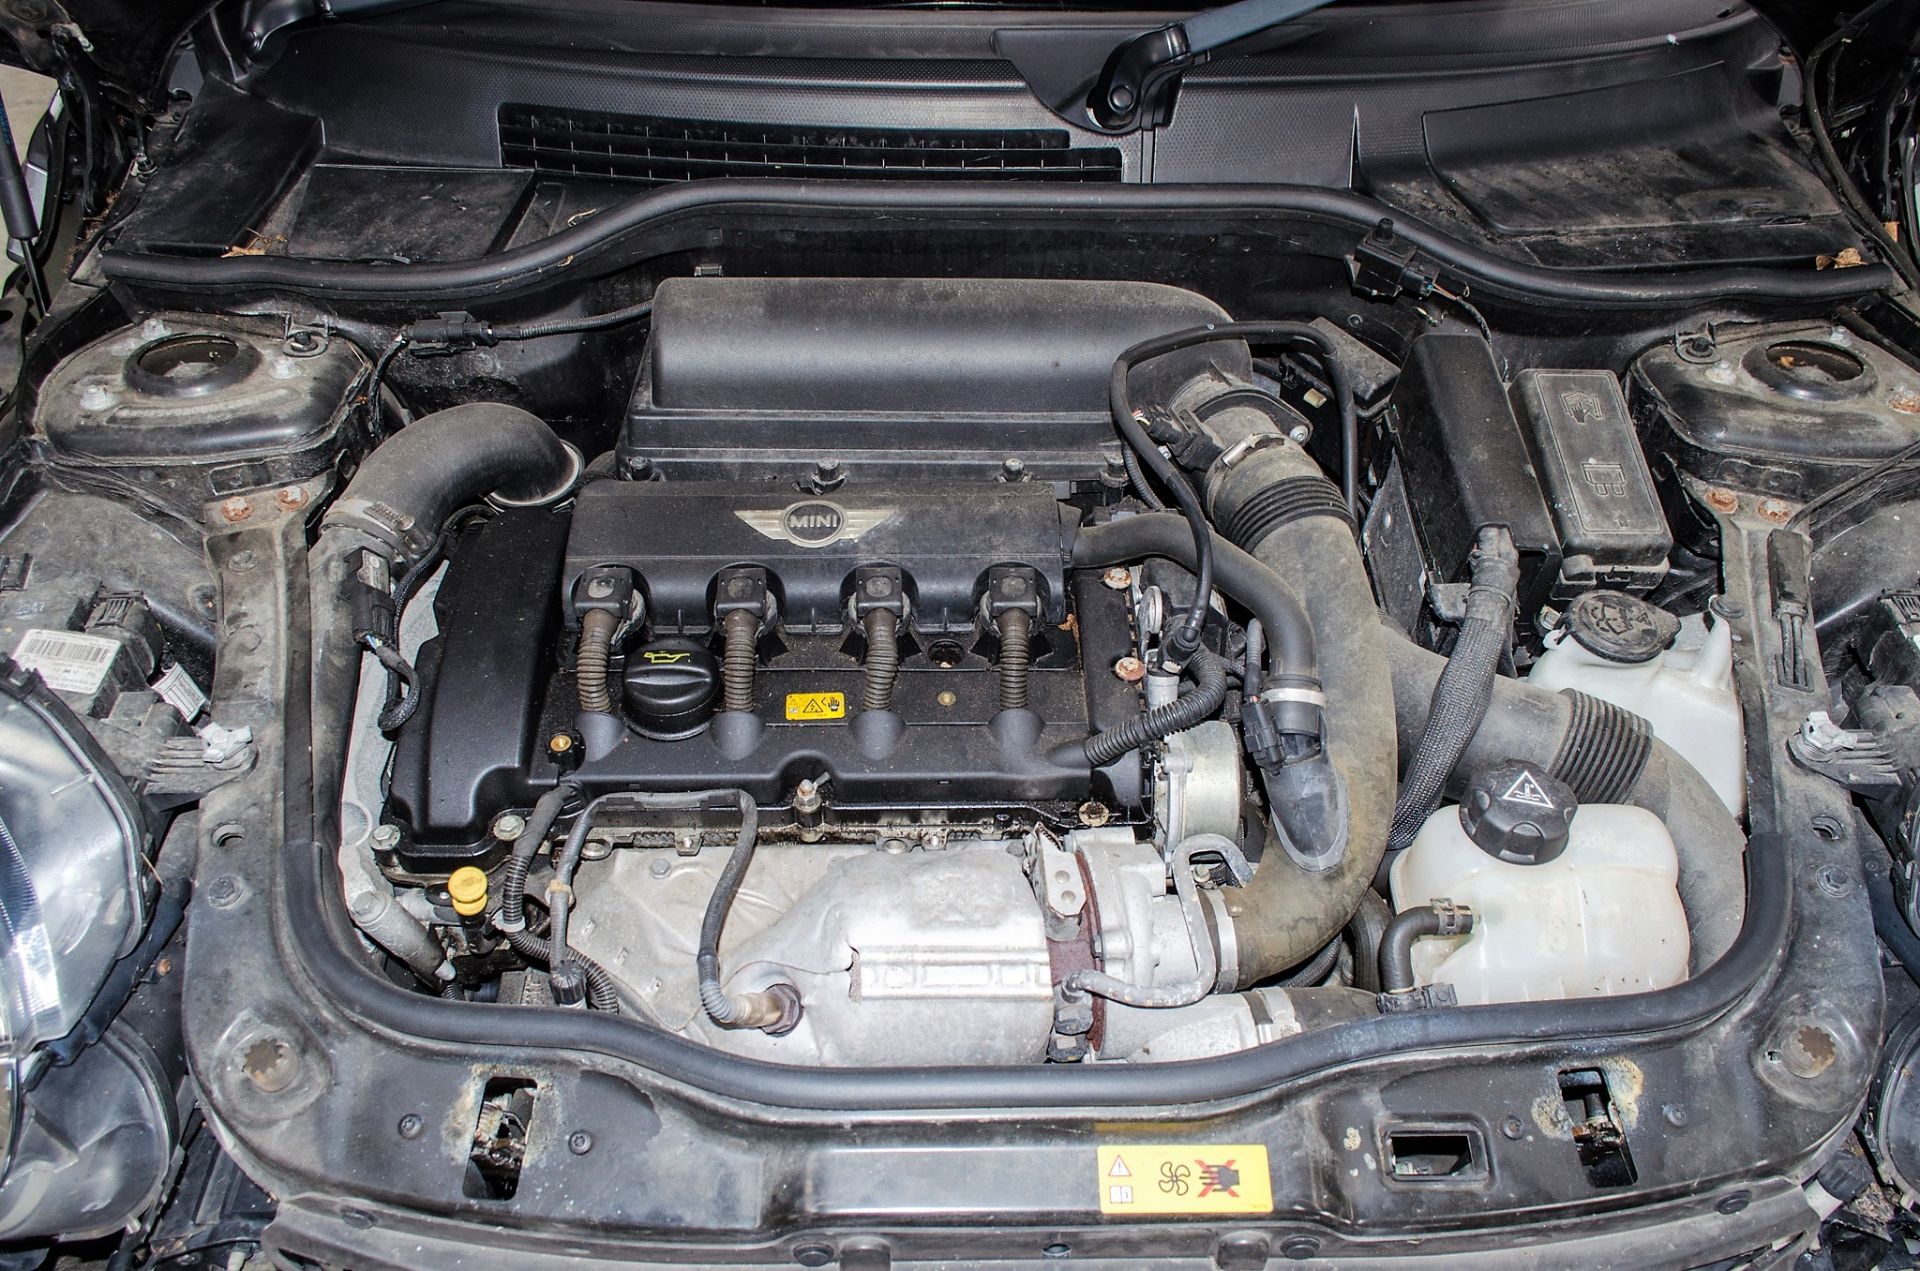 Mini John Cooper Works 1.6 petrol 3 door hatchback car Registration Number: YG12 ZCE Date of - Image 27 of 29